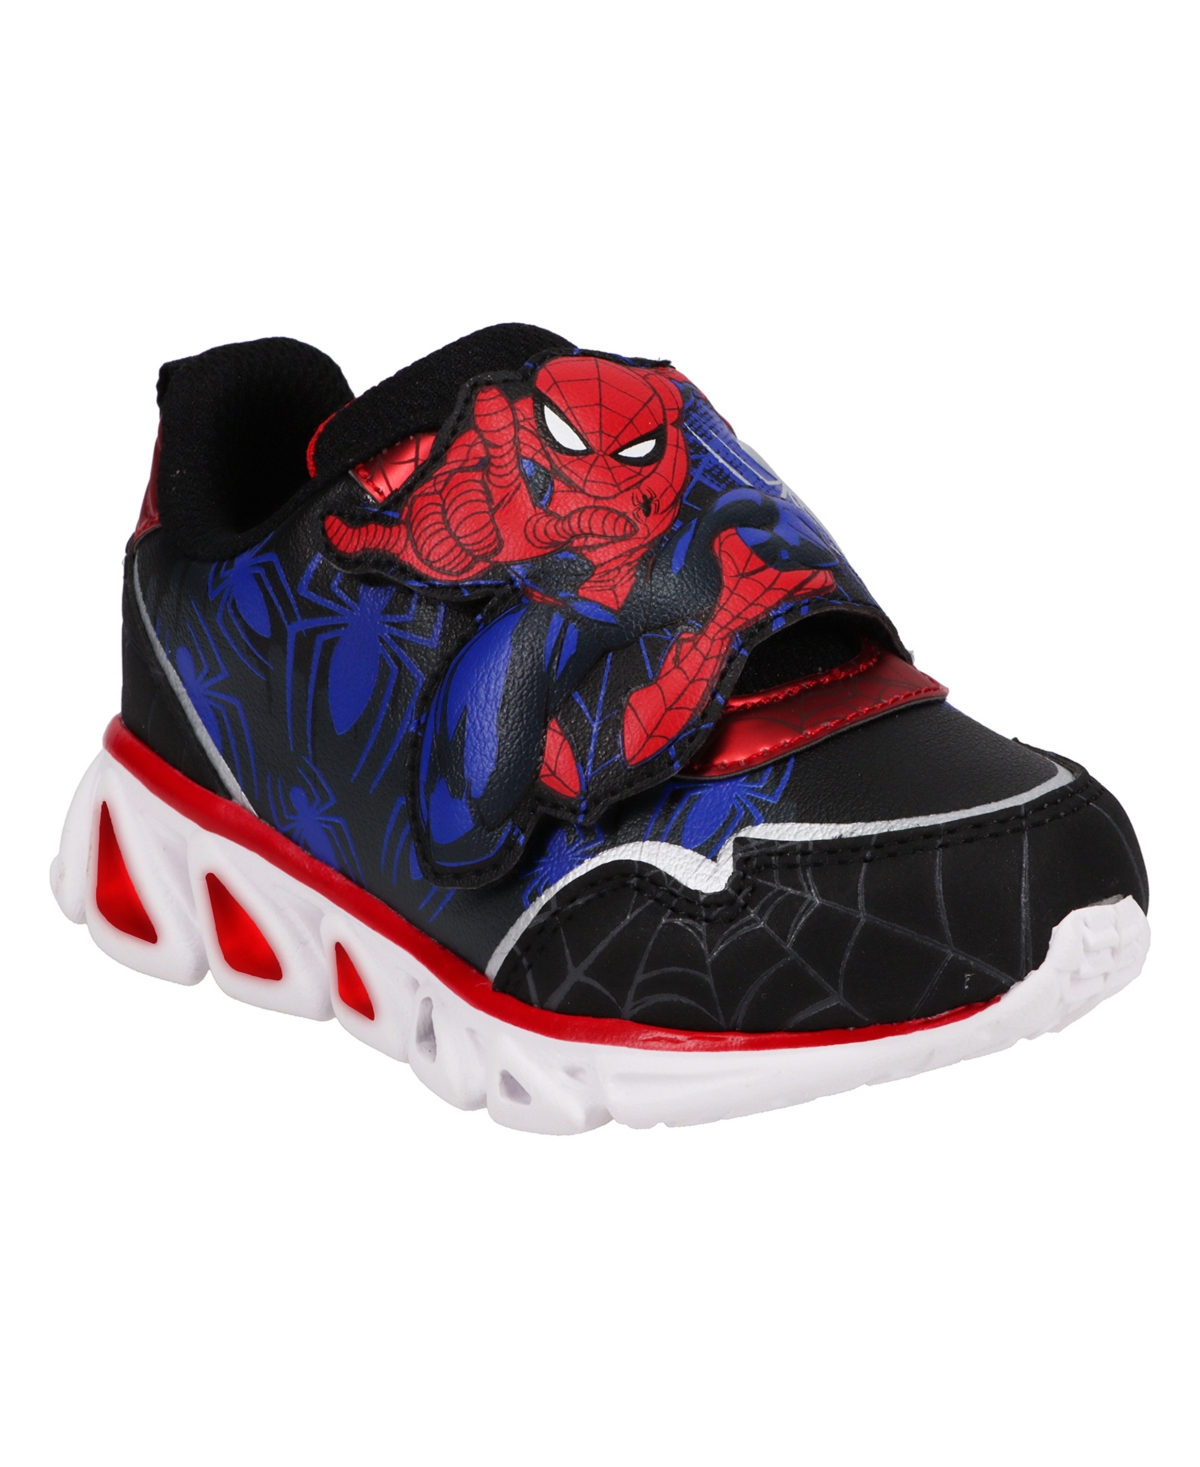 ДС Марвел кроссовки. Кроссовки Marvel для мальчика. Обувь Spider man. Кроссовки Марвел кари. Кроссовки марвел